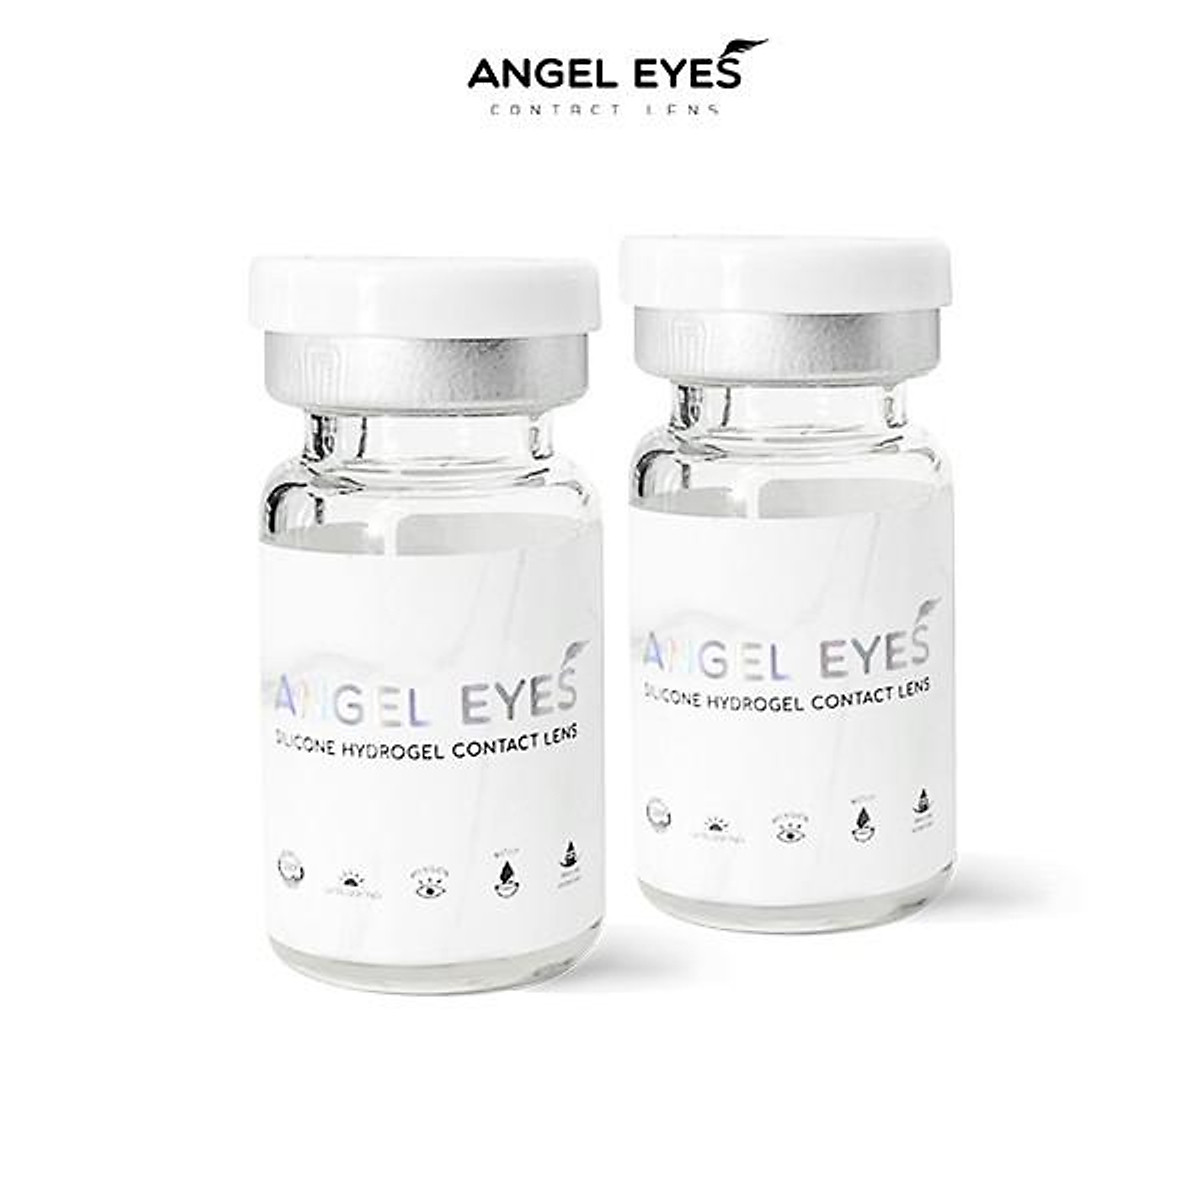 Lens cận loạn thị Angel Eyes - Độ cận 0 - 7.00 độ - Độ loạn từ 0.75 đến 2.75 độ - 5 trục cơ bản 0, 20, 90, 160, 180